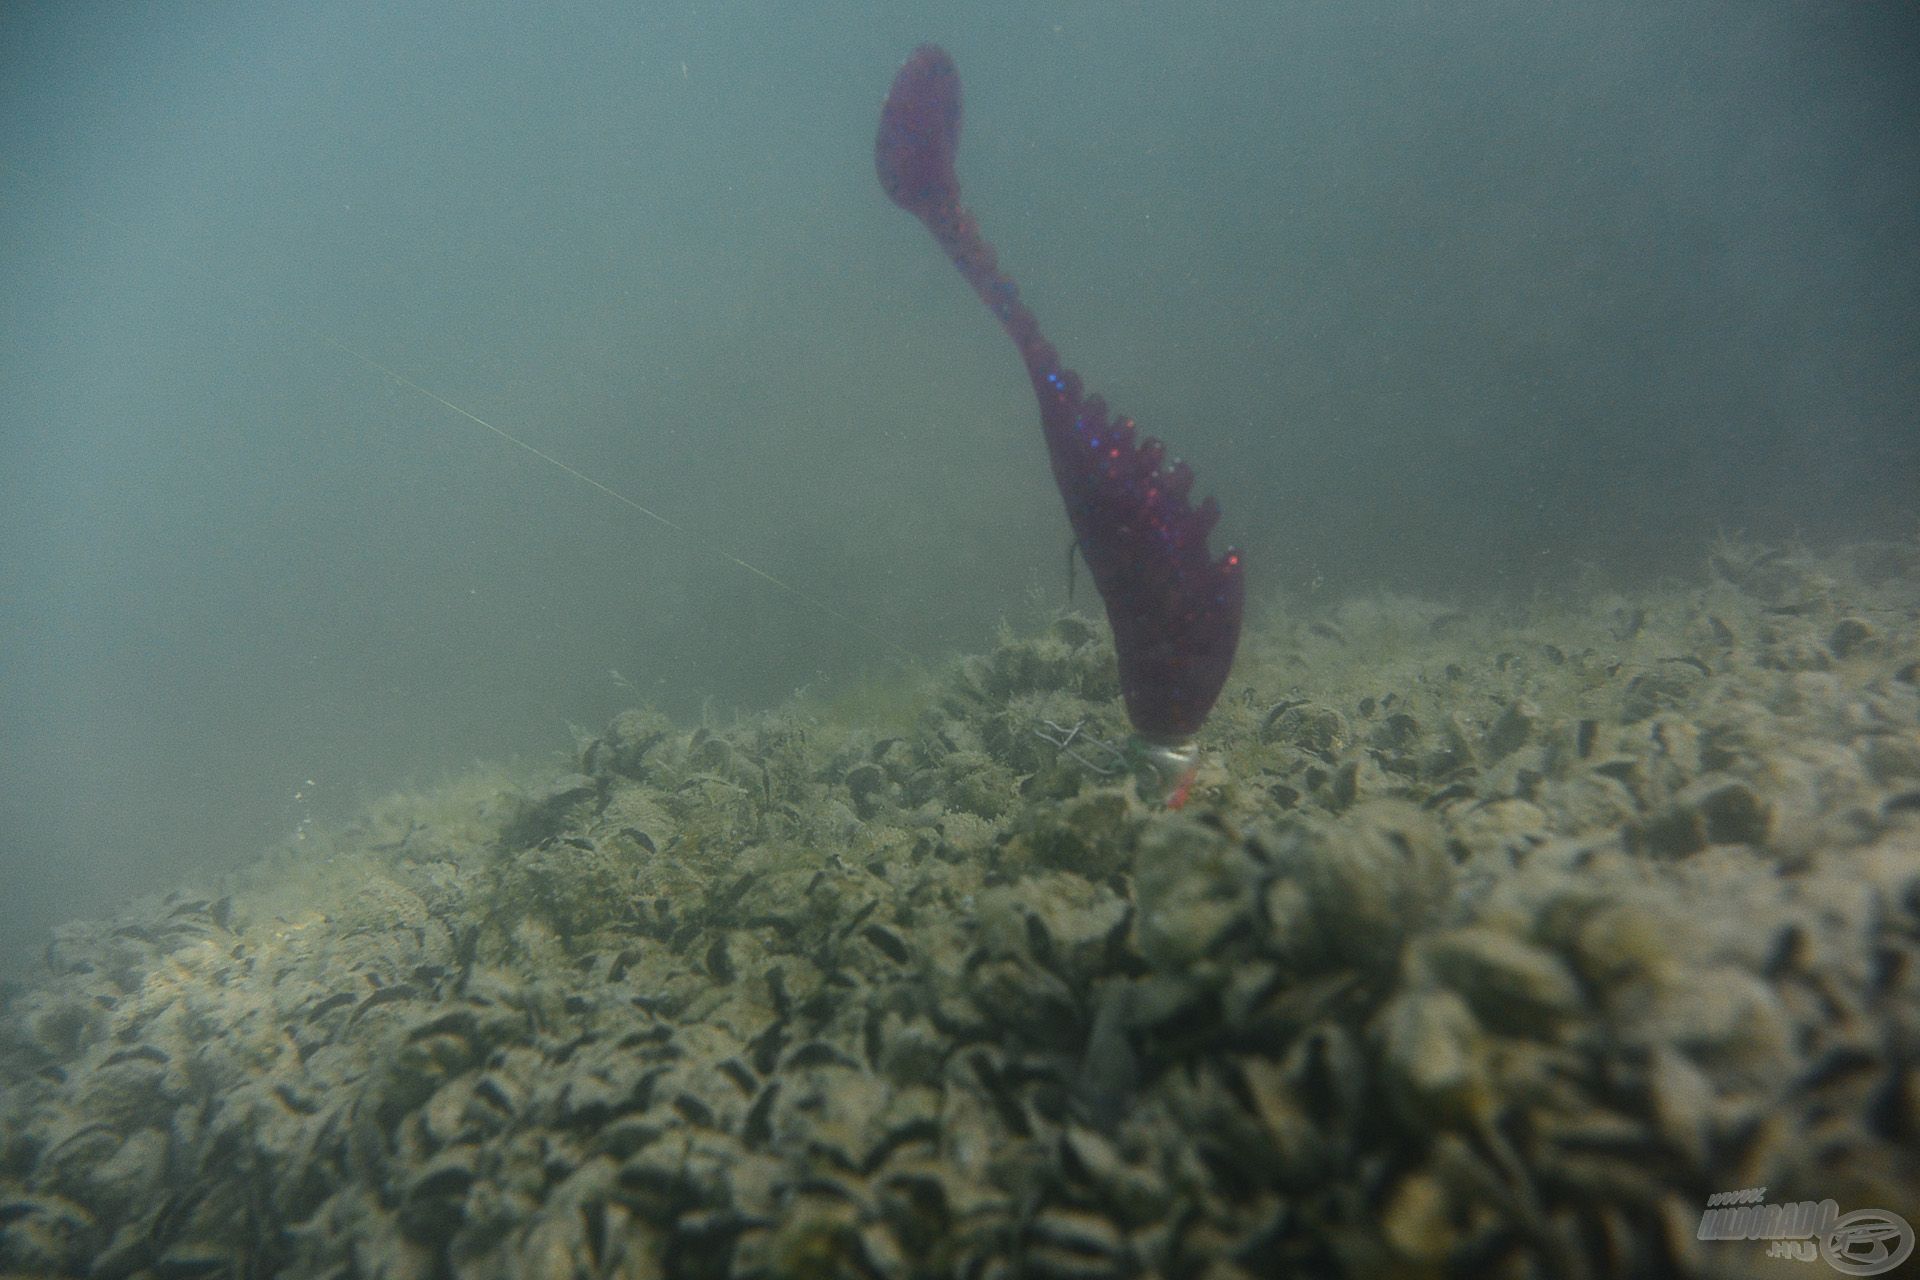 A Floating Shad dundibb teste felemeli a horogszárat, így valóban olyan, mintha táplálék után keresgélő kishalat látnánk. Egy normál jig horgon is tökéletesen teszi a dolgát